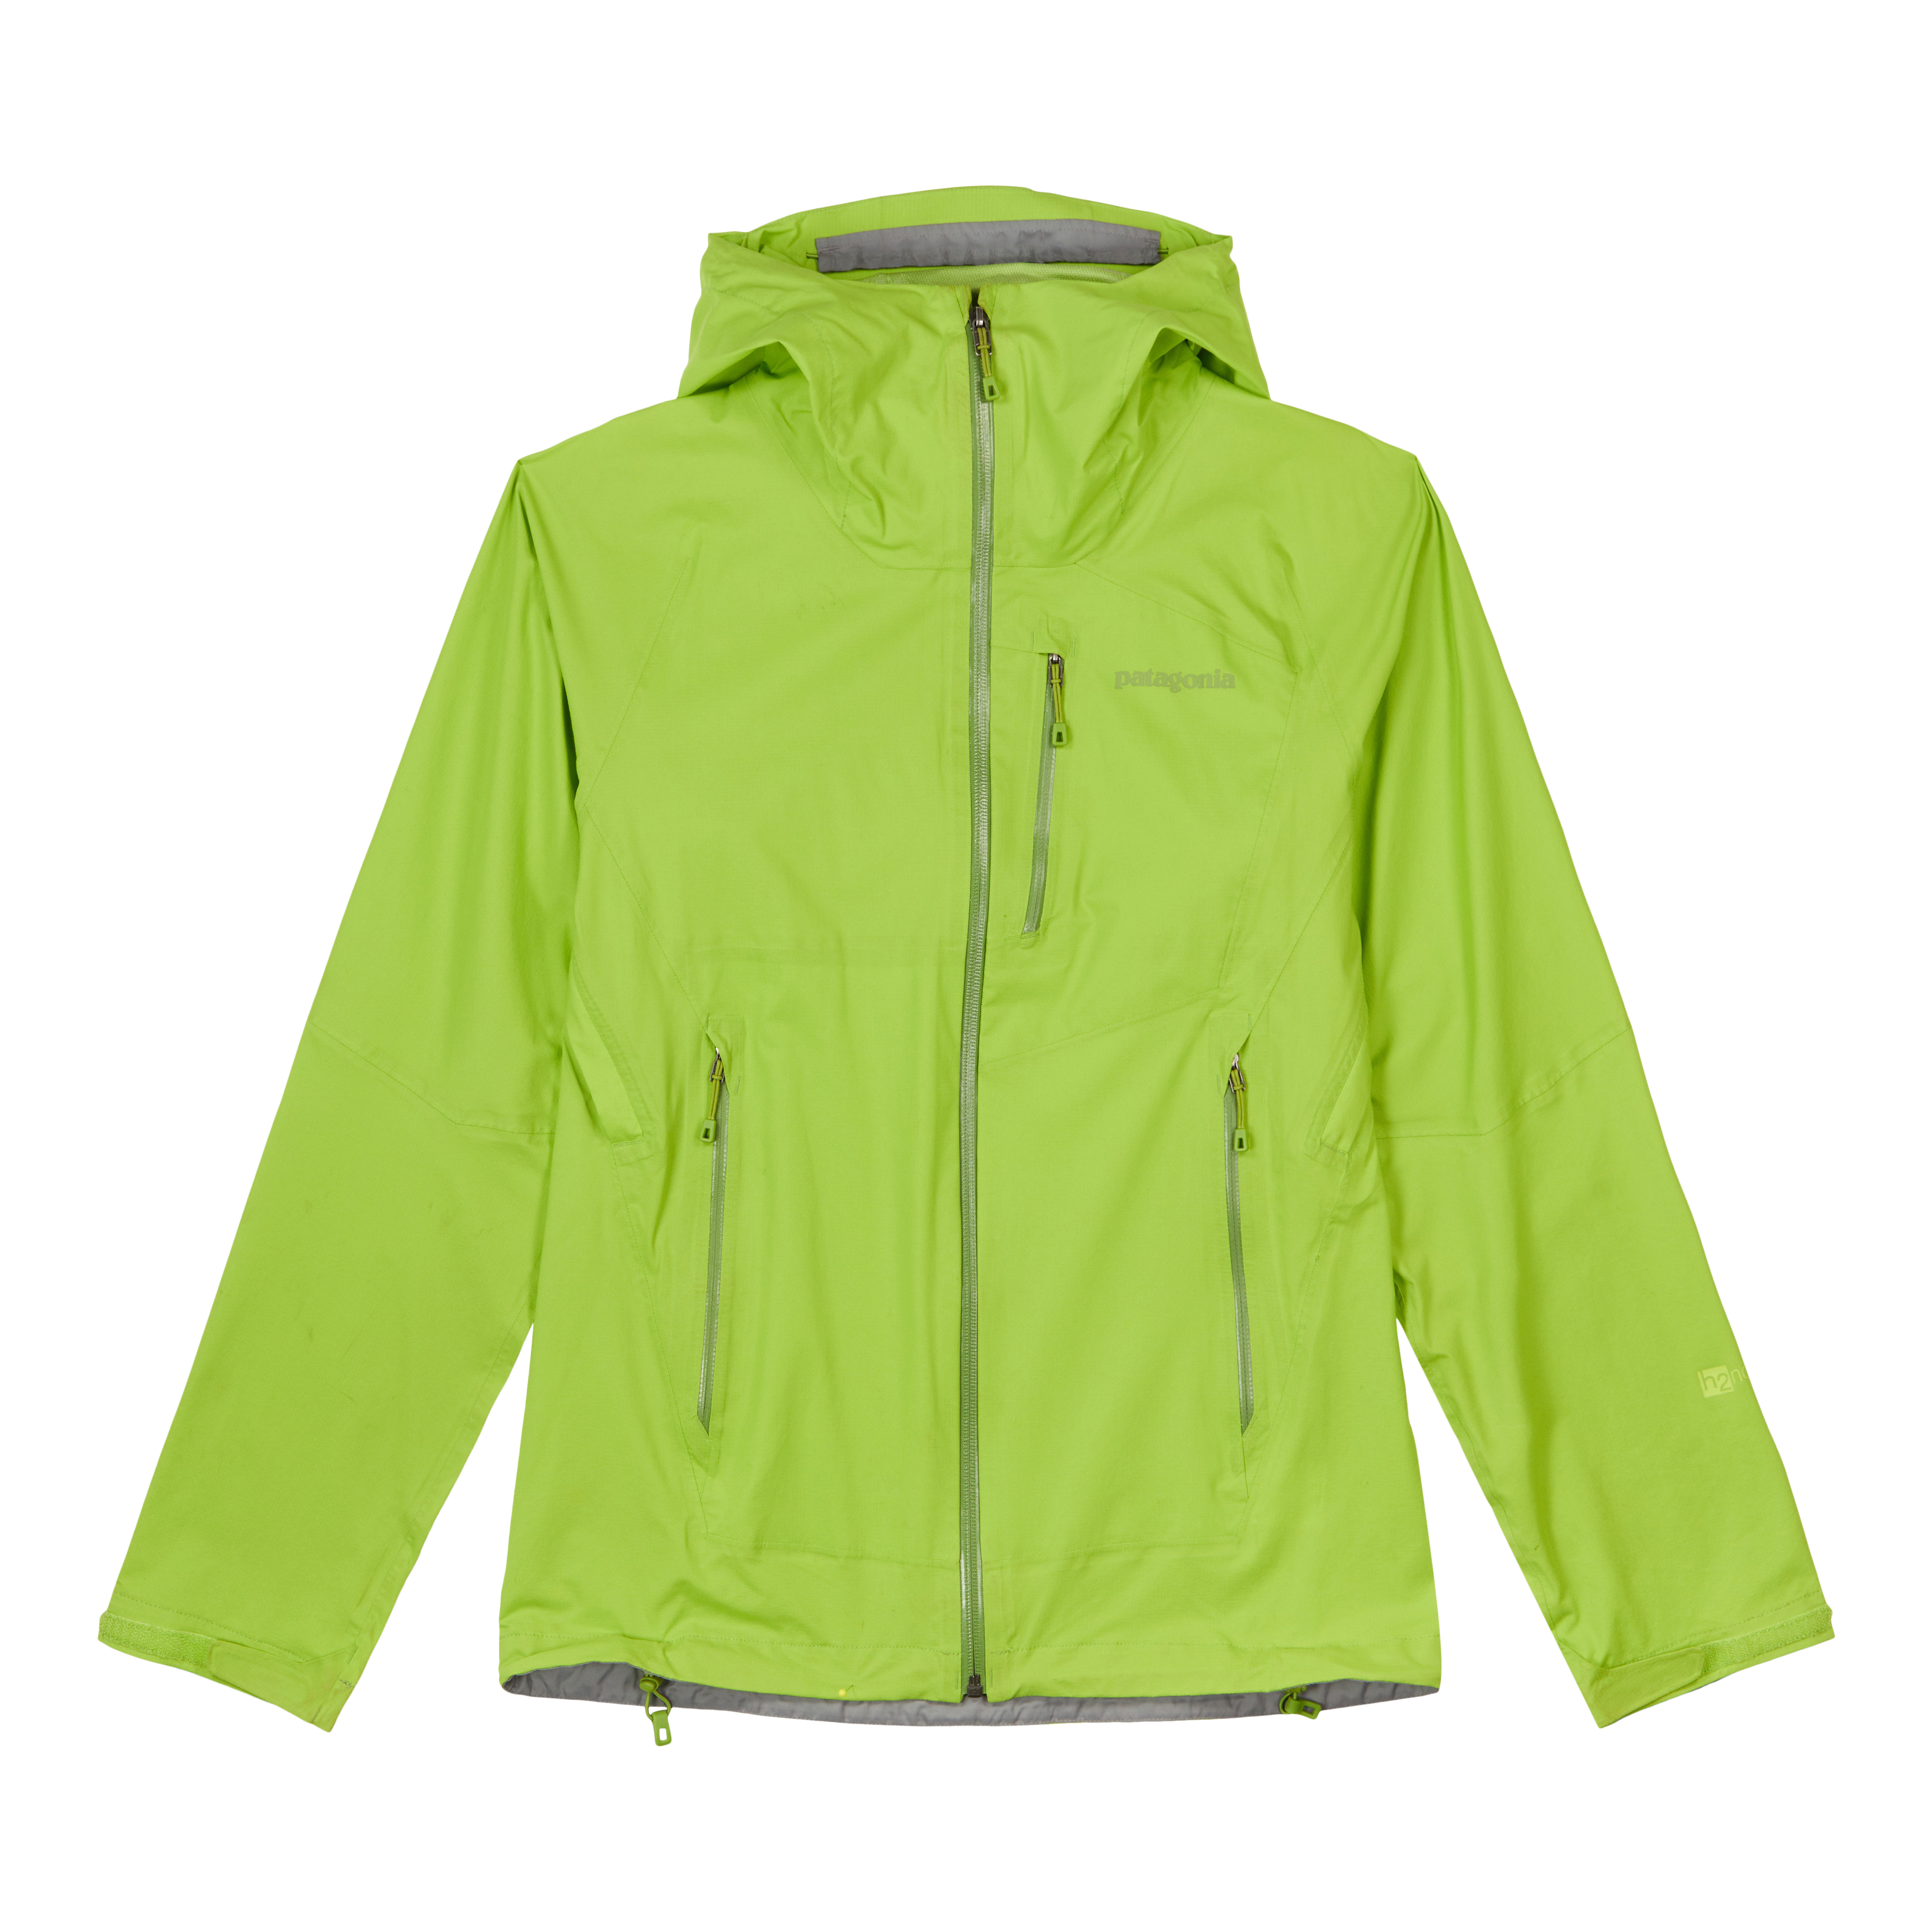 Patagonia Worn Wear Men's Stretch Rainshadow Jacket True Teal - Used